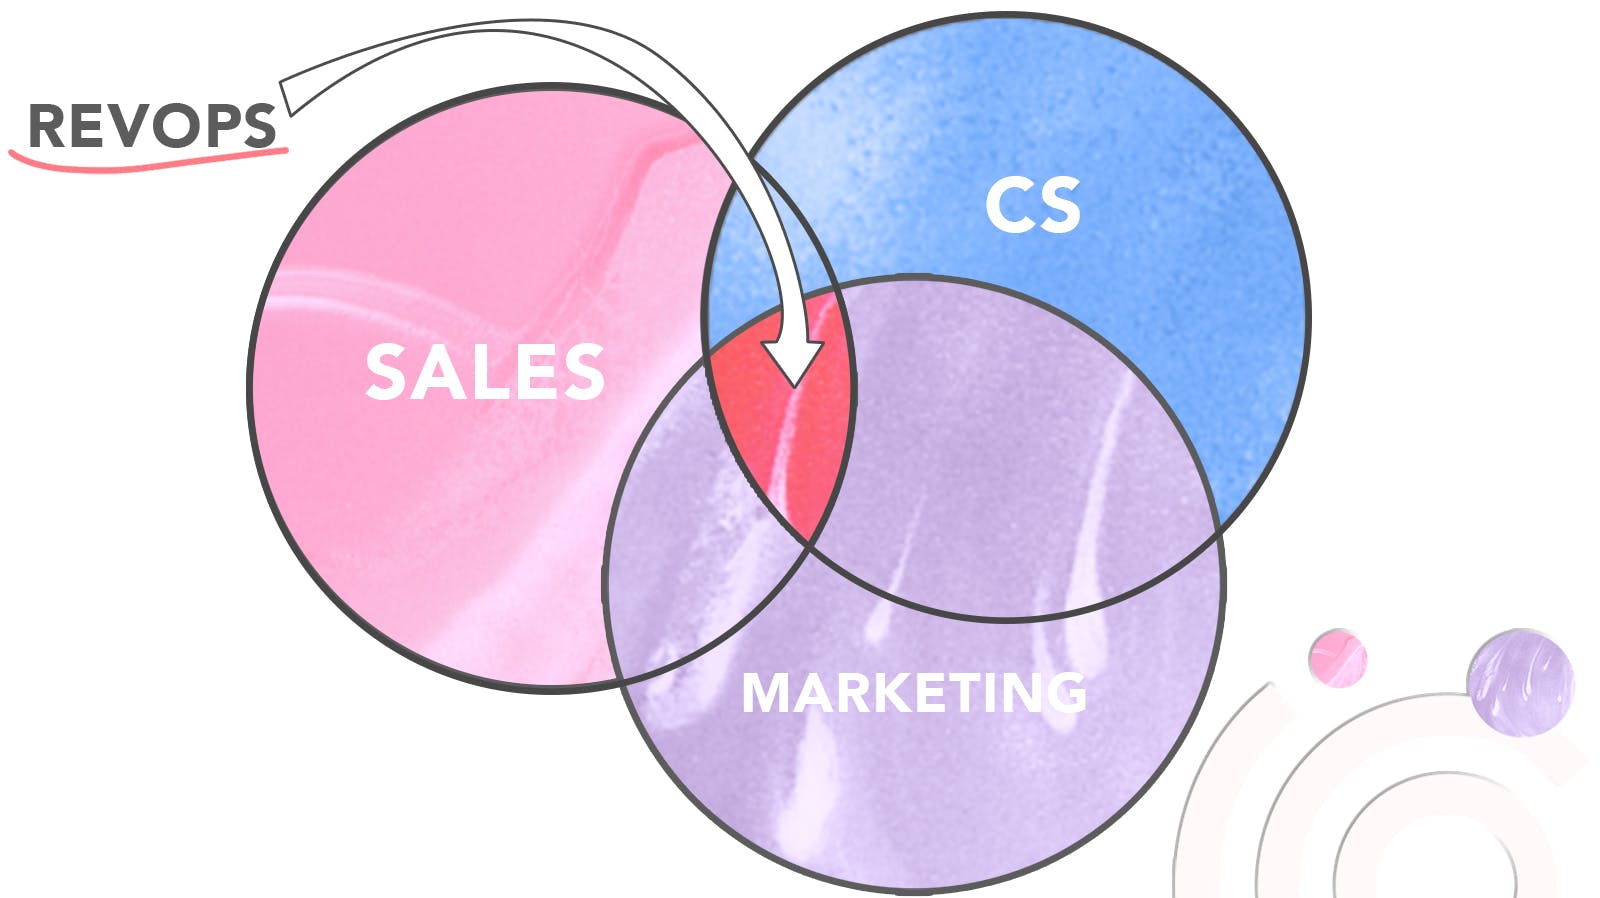 revops-sales-marketing-customer-success-webinars-univid